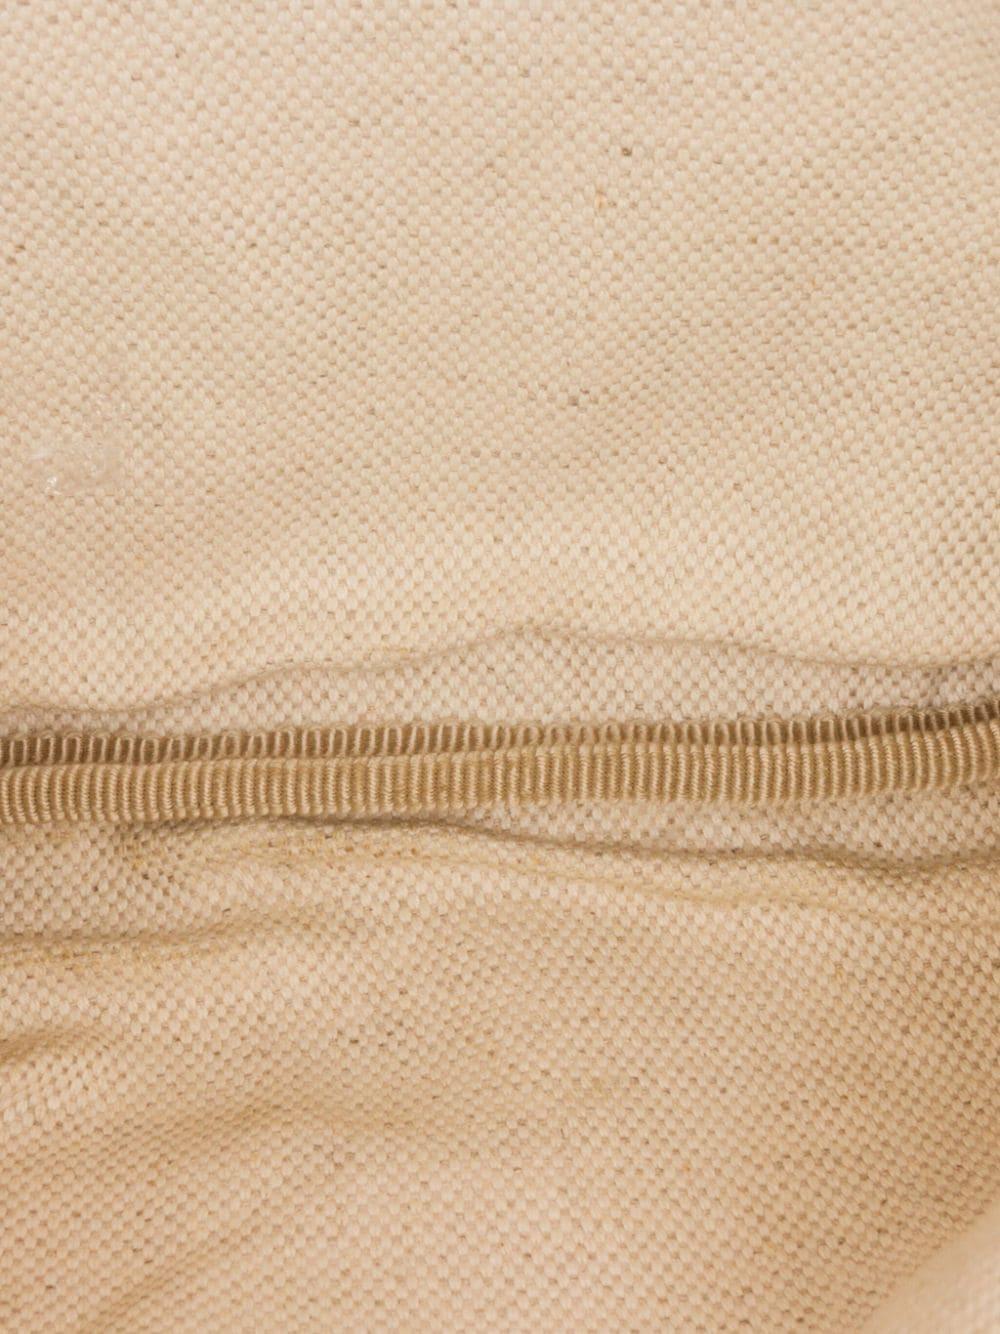  Gucci - Sac ceinture Sylvie Web en cuir blanc texturé avec logo imprimé Unisexe 